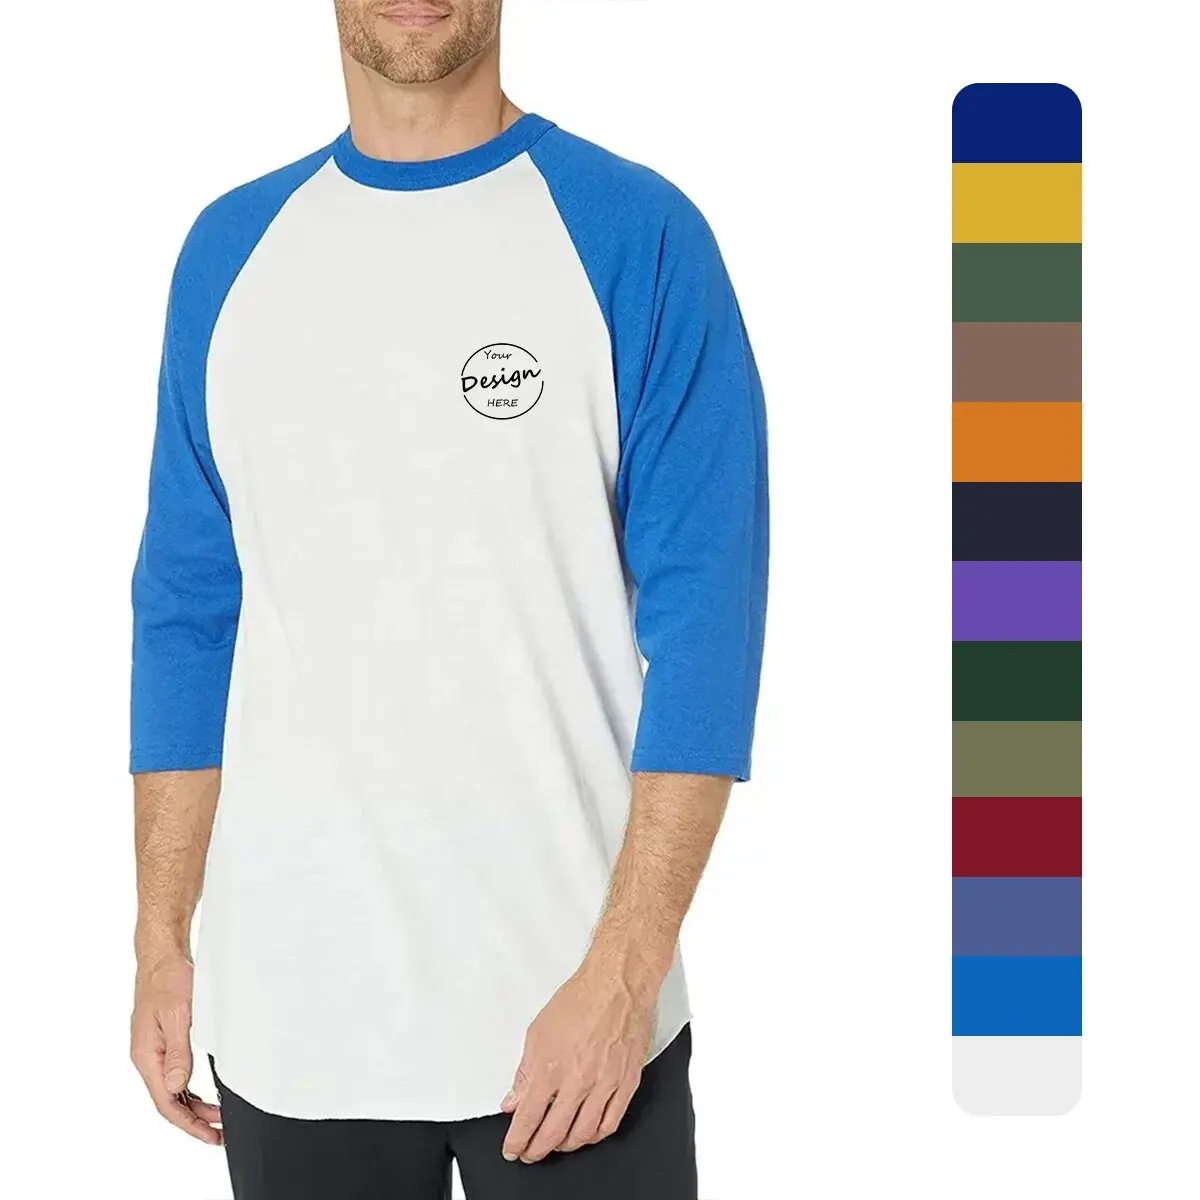 Alta calidad serigrafía color bloque ropa deportiva casual al por mayor personalizado 65% algodón/35% Soandex media manga camisa hombres